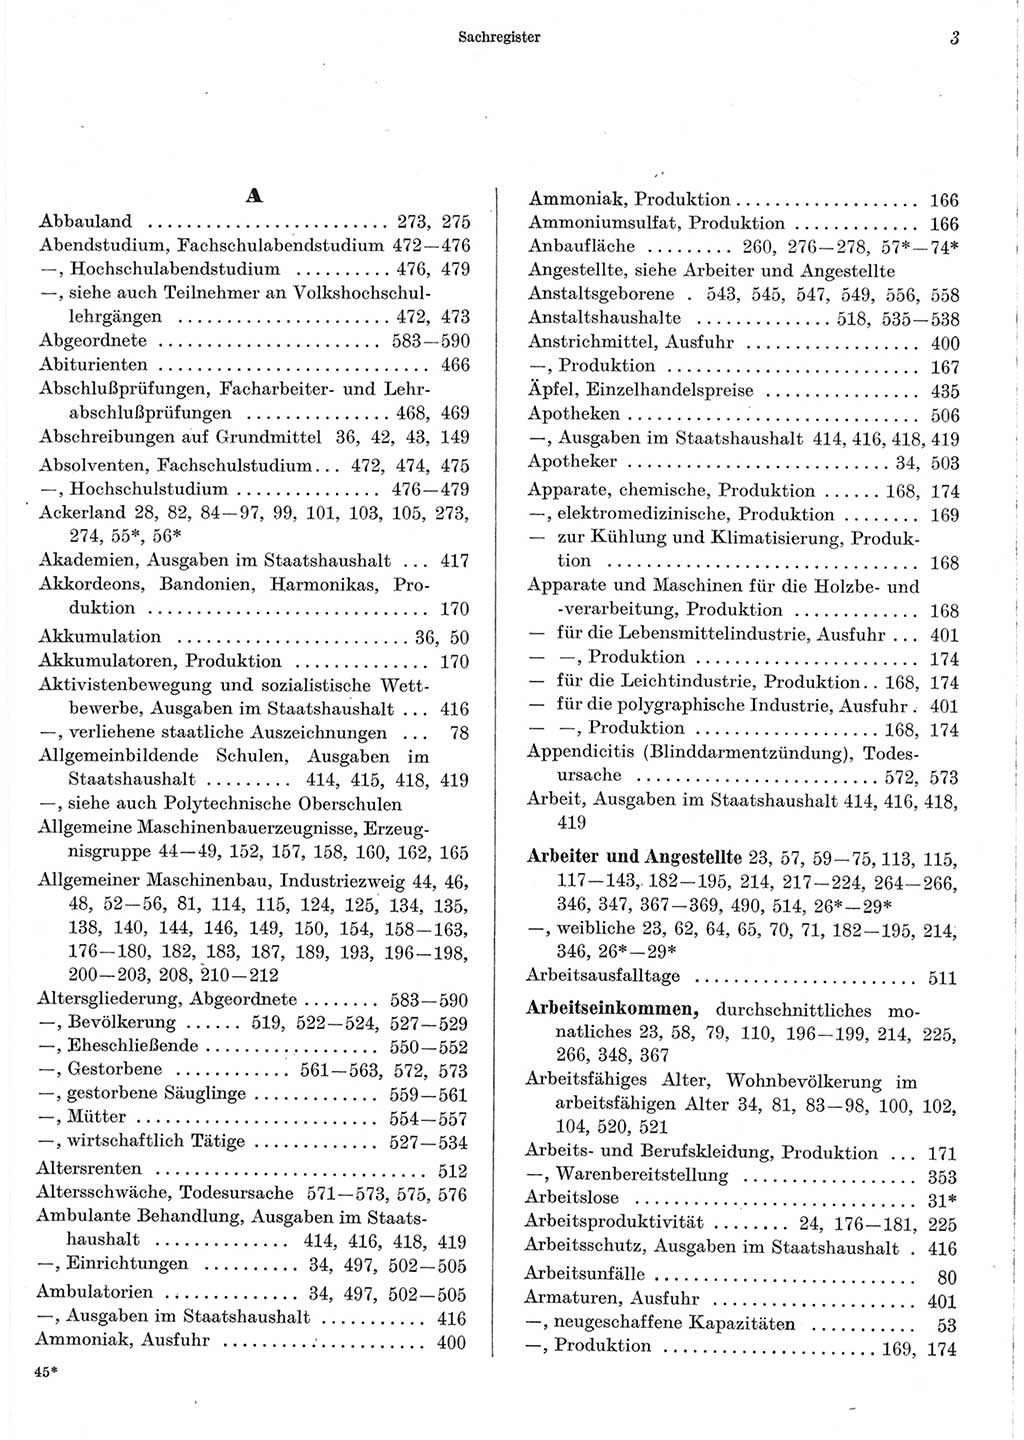 Statistisches Jahrbuch der Deutschen Demokratischen Republik (DDR) 1967, Seite 3 (Stat. Jb. DDR 1967, S. 3)